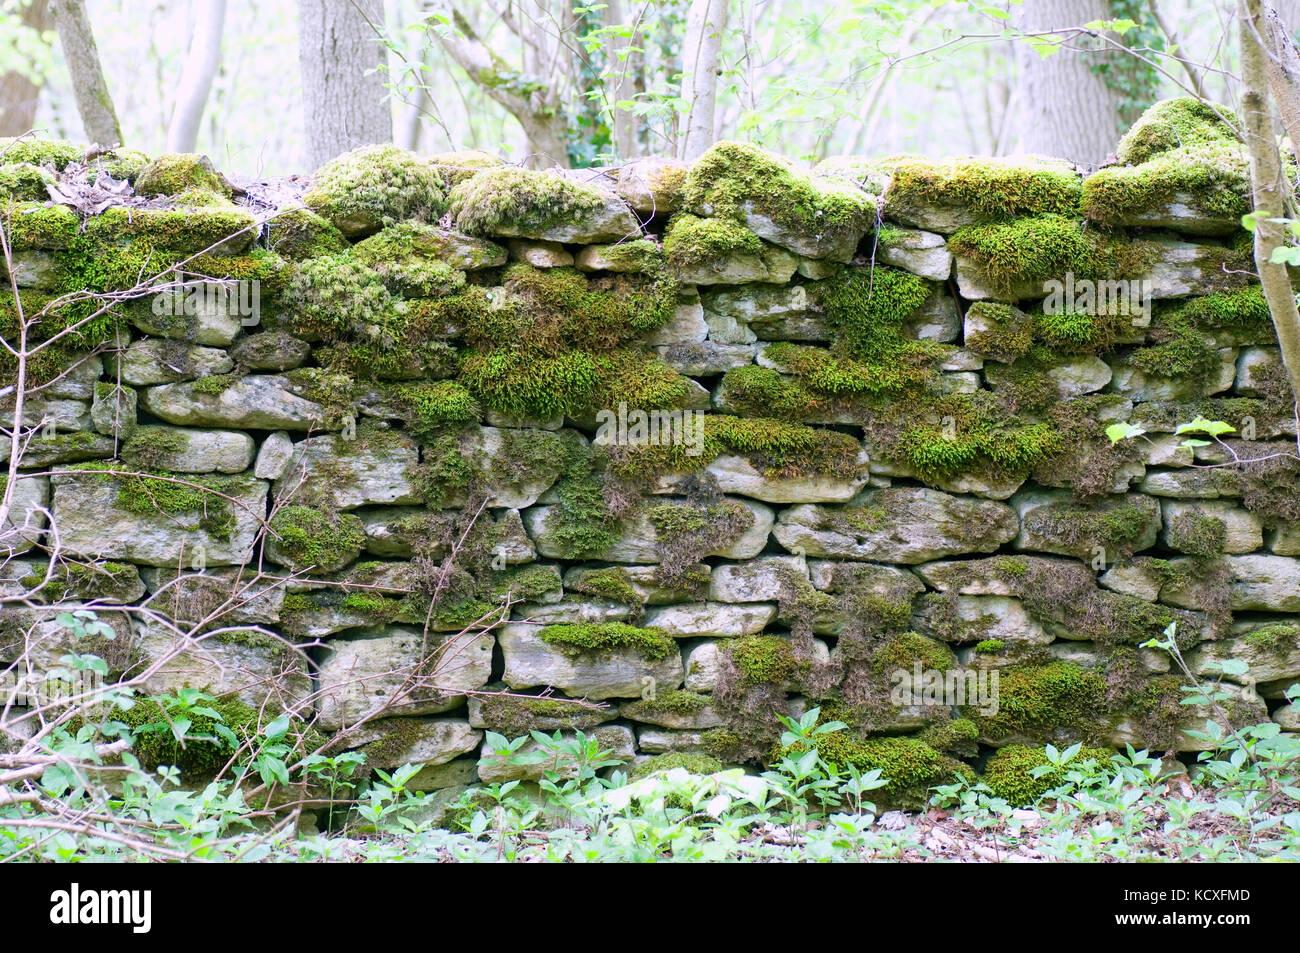 Mur de pierre sèche couverts forestiers dans les mousses Banque D'Images